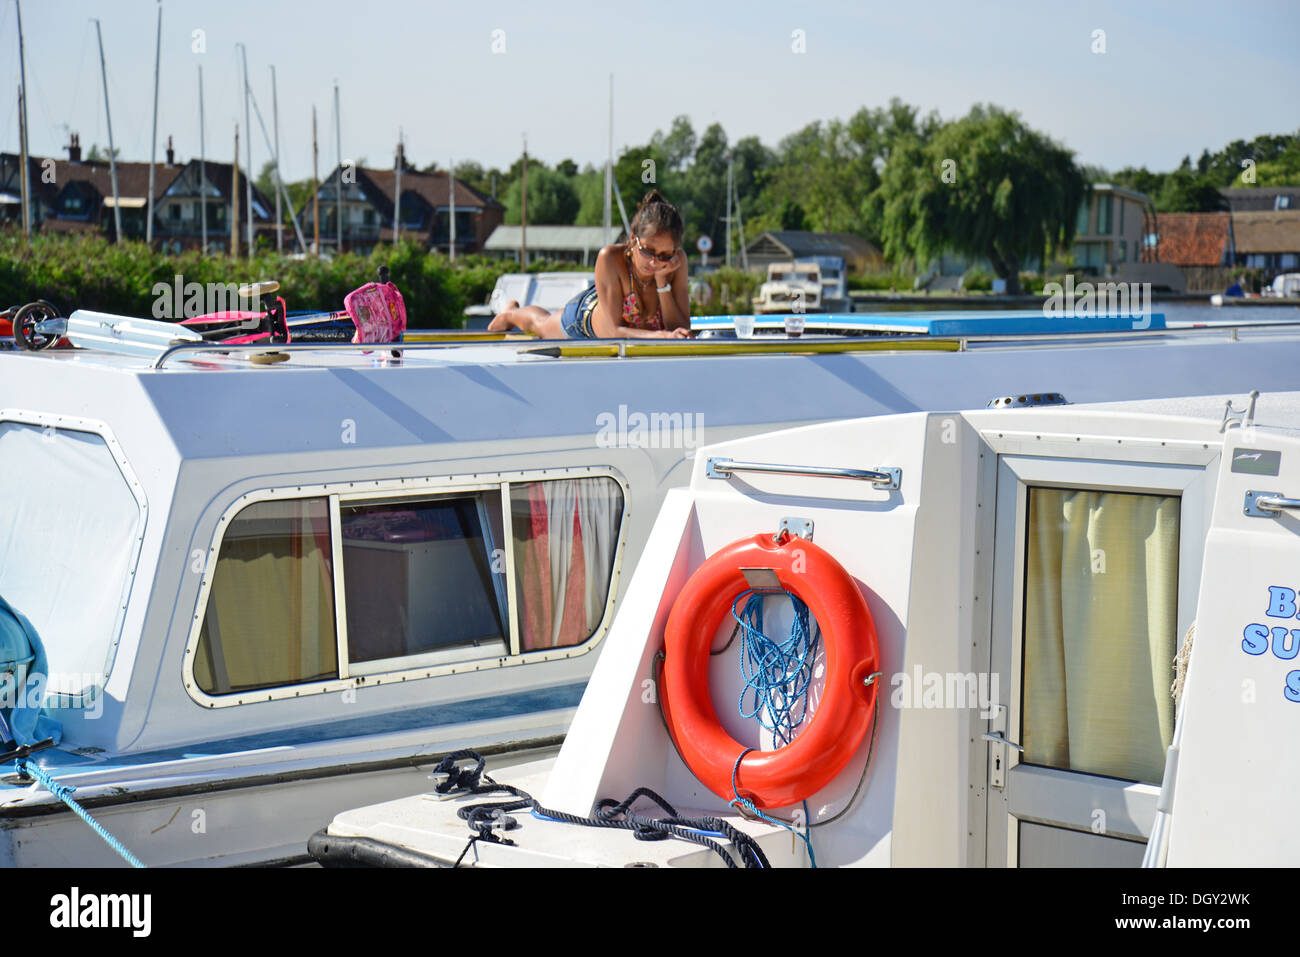 Boote am Fluss Bure, Horning, Norfolk Broads, Norfolk, England, Vereinigtes Königreich Stockfoto